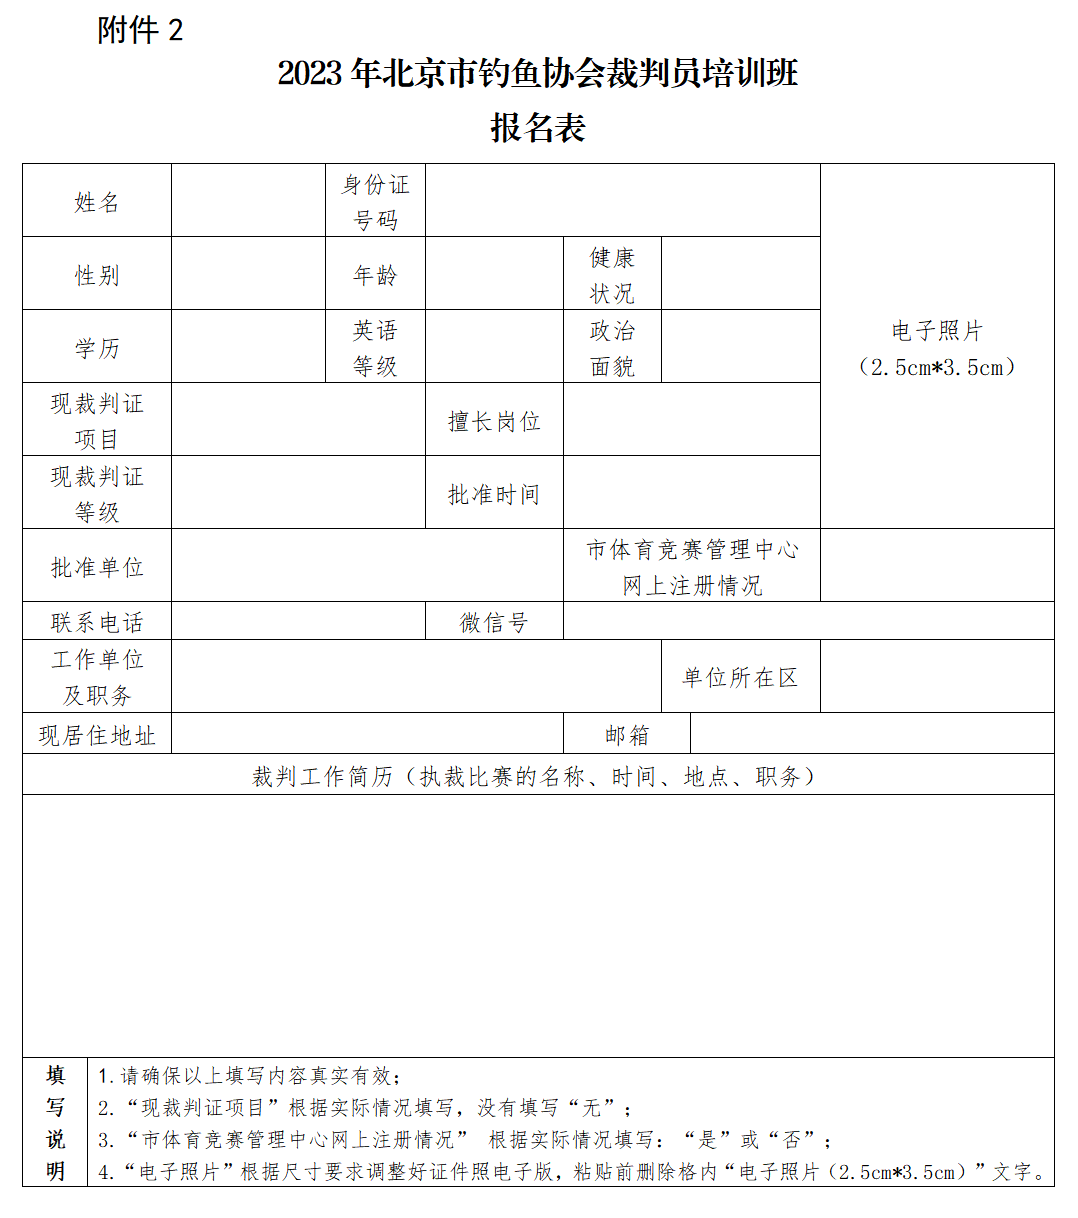 2023年北京市钓鱼协会裁判员培训班报名表